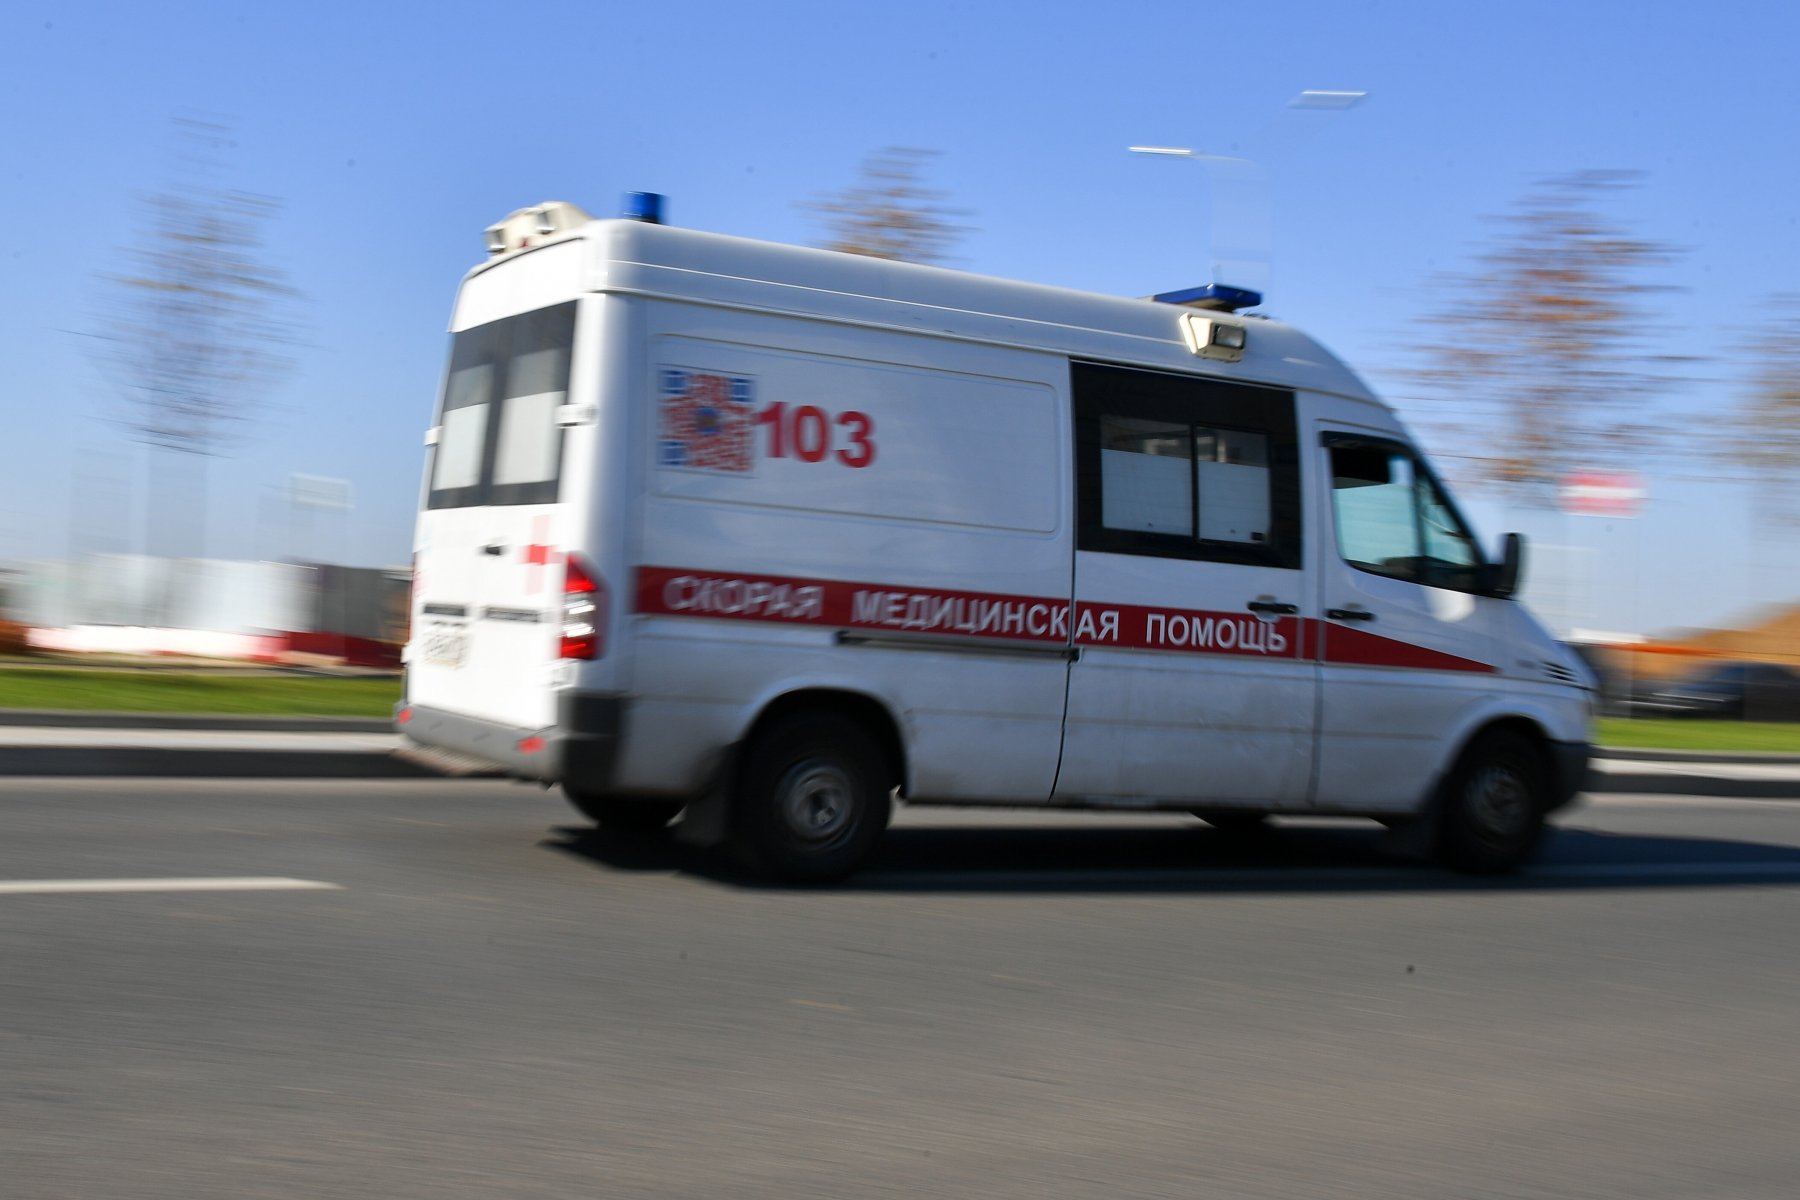 Крупный чиновник умер от отравления в Подмосковье